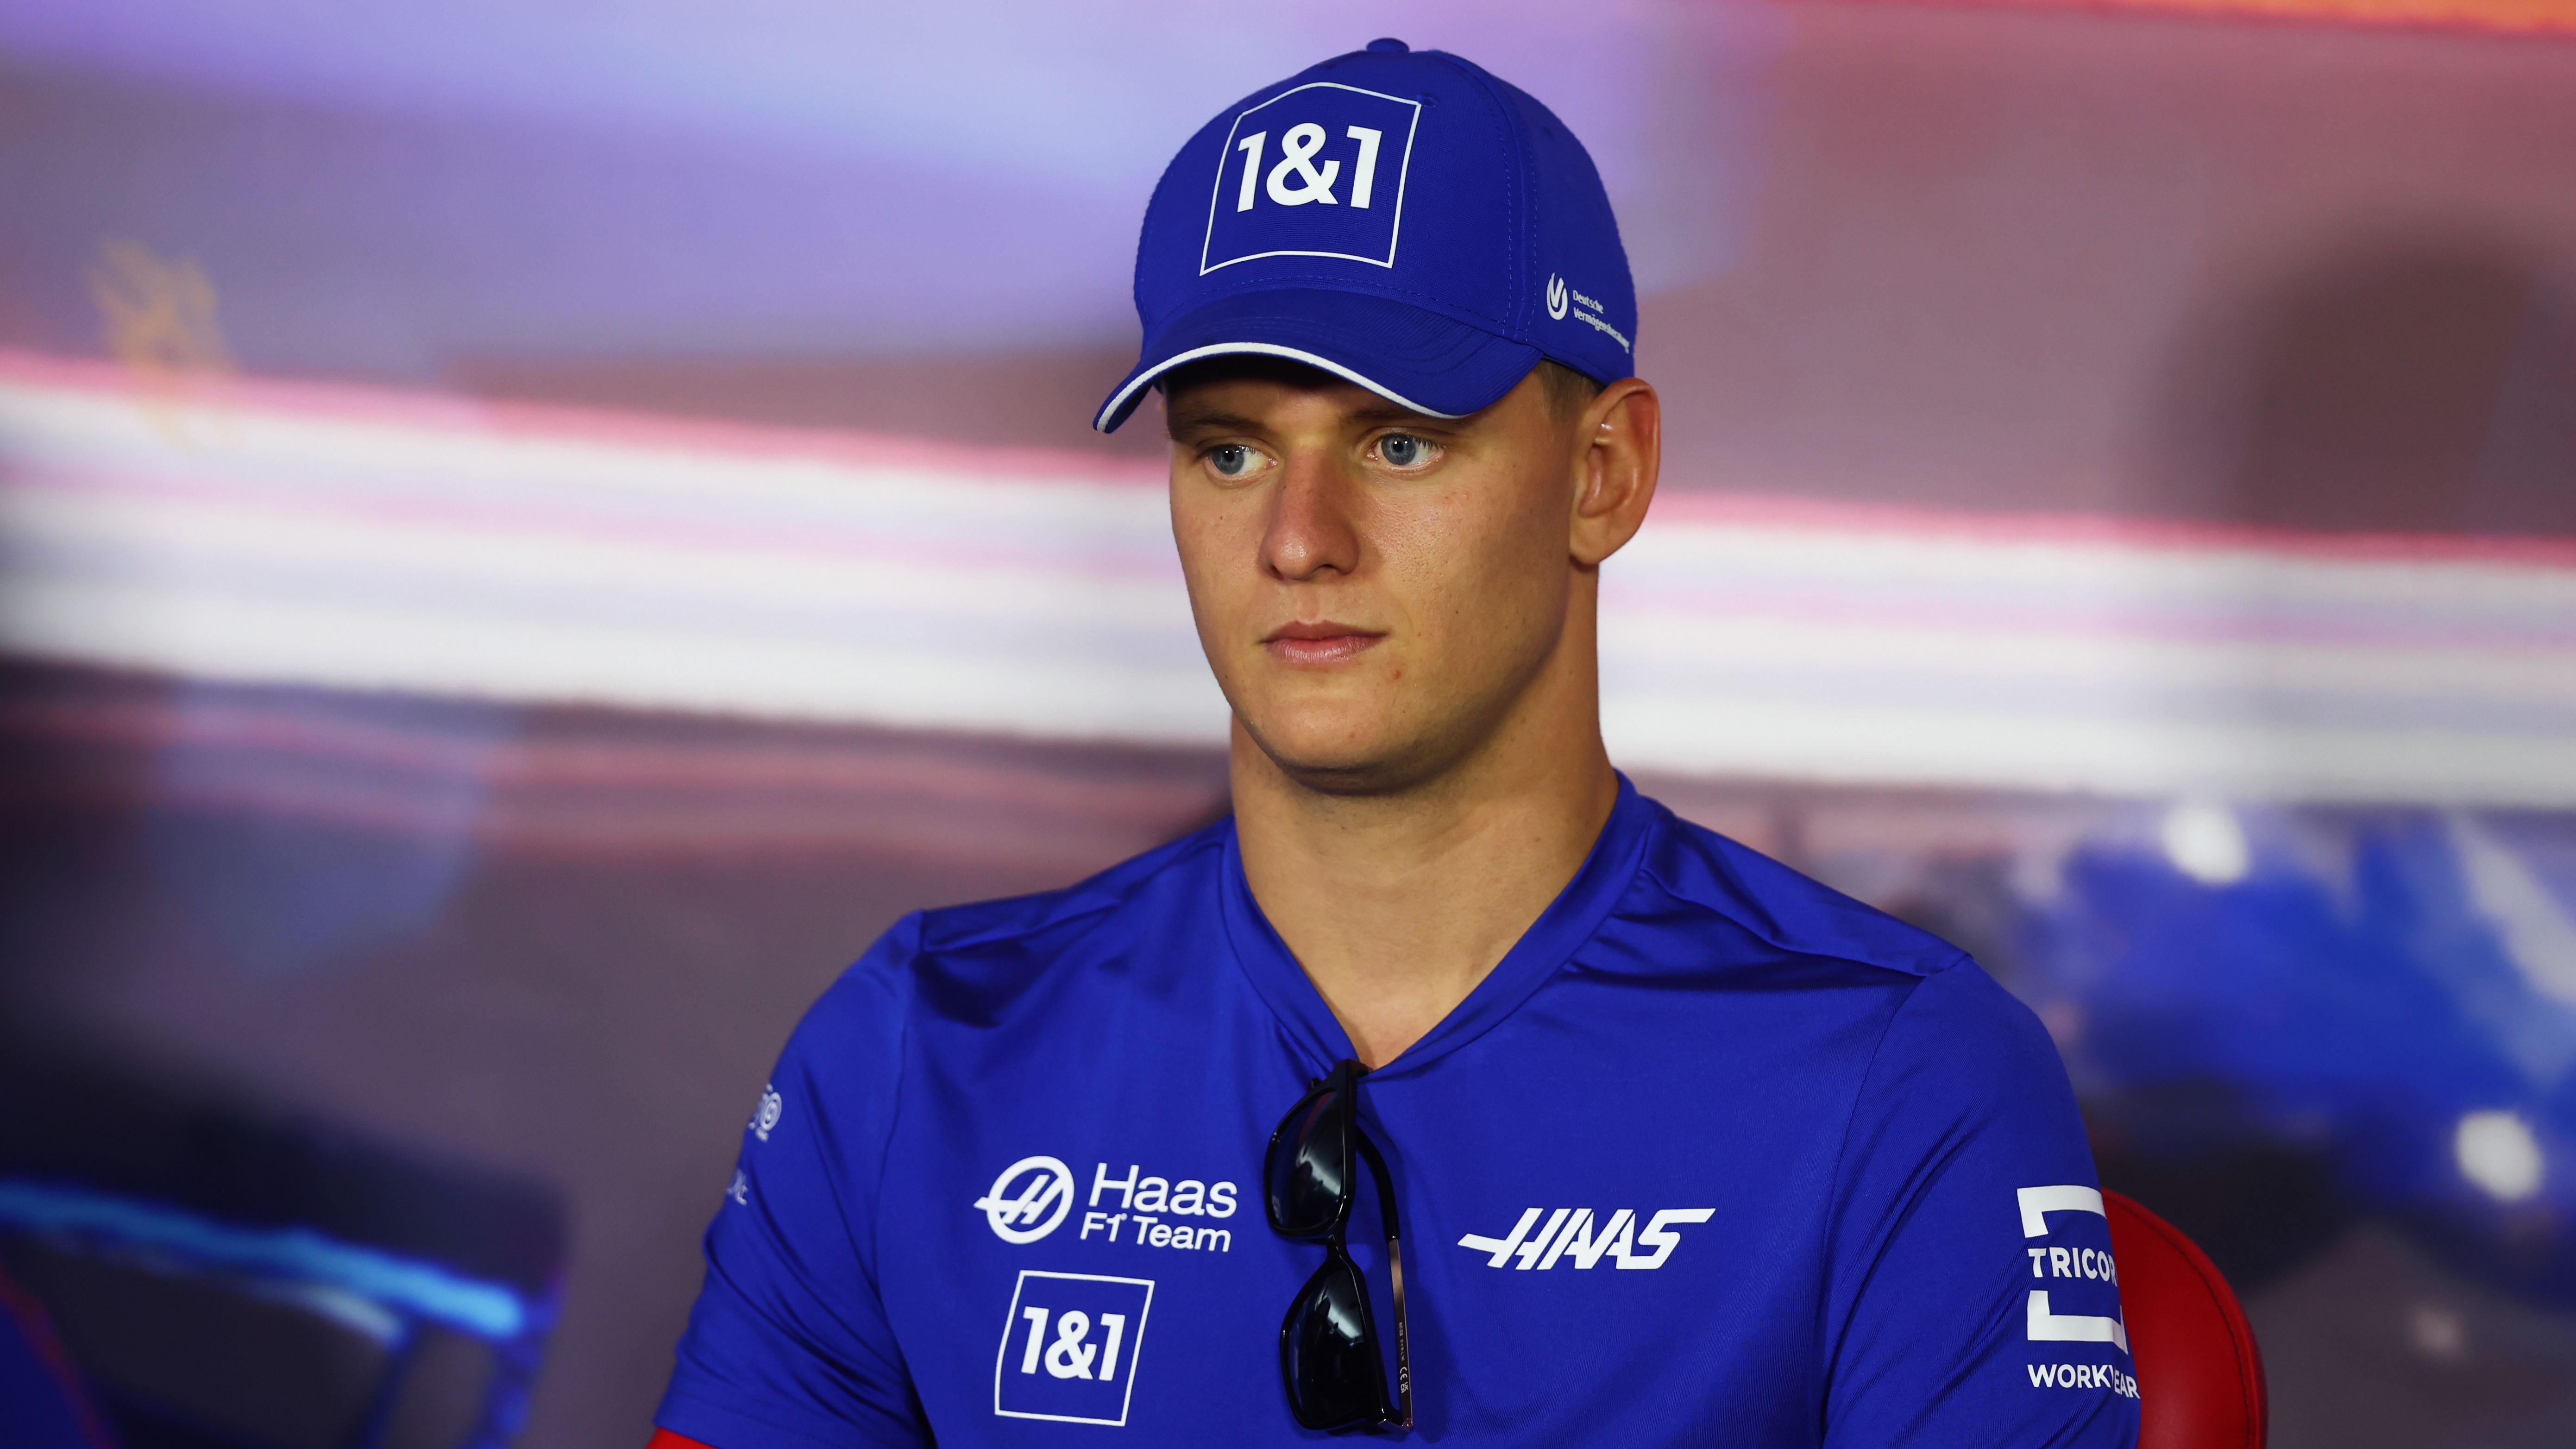 
                <strong>Haas gibt Schumacher-Aus und Nachfolger bekannt</strong><br>
                Dass Mick Schumacher keine Zukunft bei Haas besitzt, darüber wurde schon länger spekuliert. Vor dem letzten Rennwochenende in Abu Dhabi verkündete der Rennstall offiziell die Trennung zur kommenden Saison. Sein Nachfolger wird ausgerechnet Landsmann Nico Hülkenberg, der seit 2019 ohne Stammcockpit war. 
              